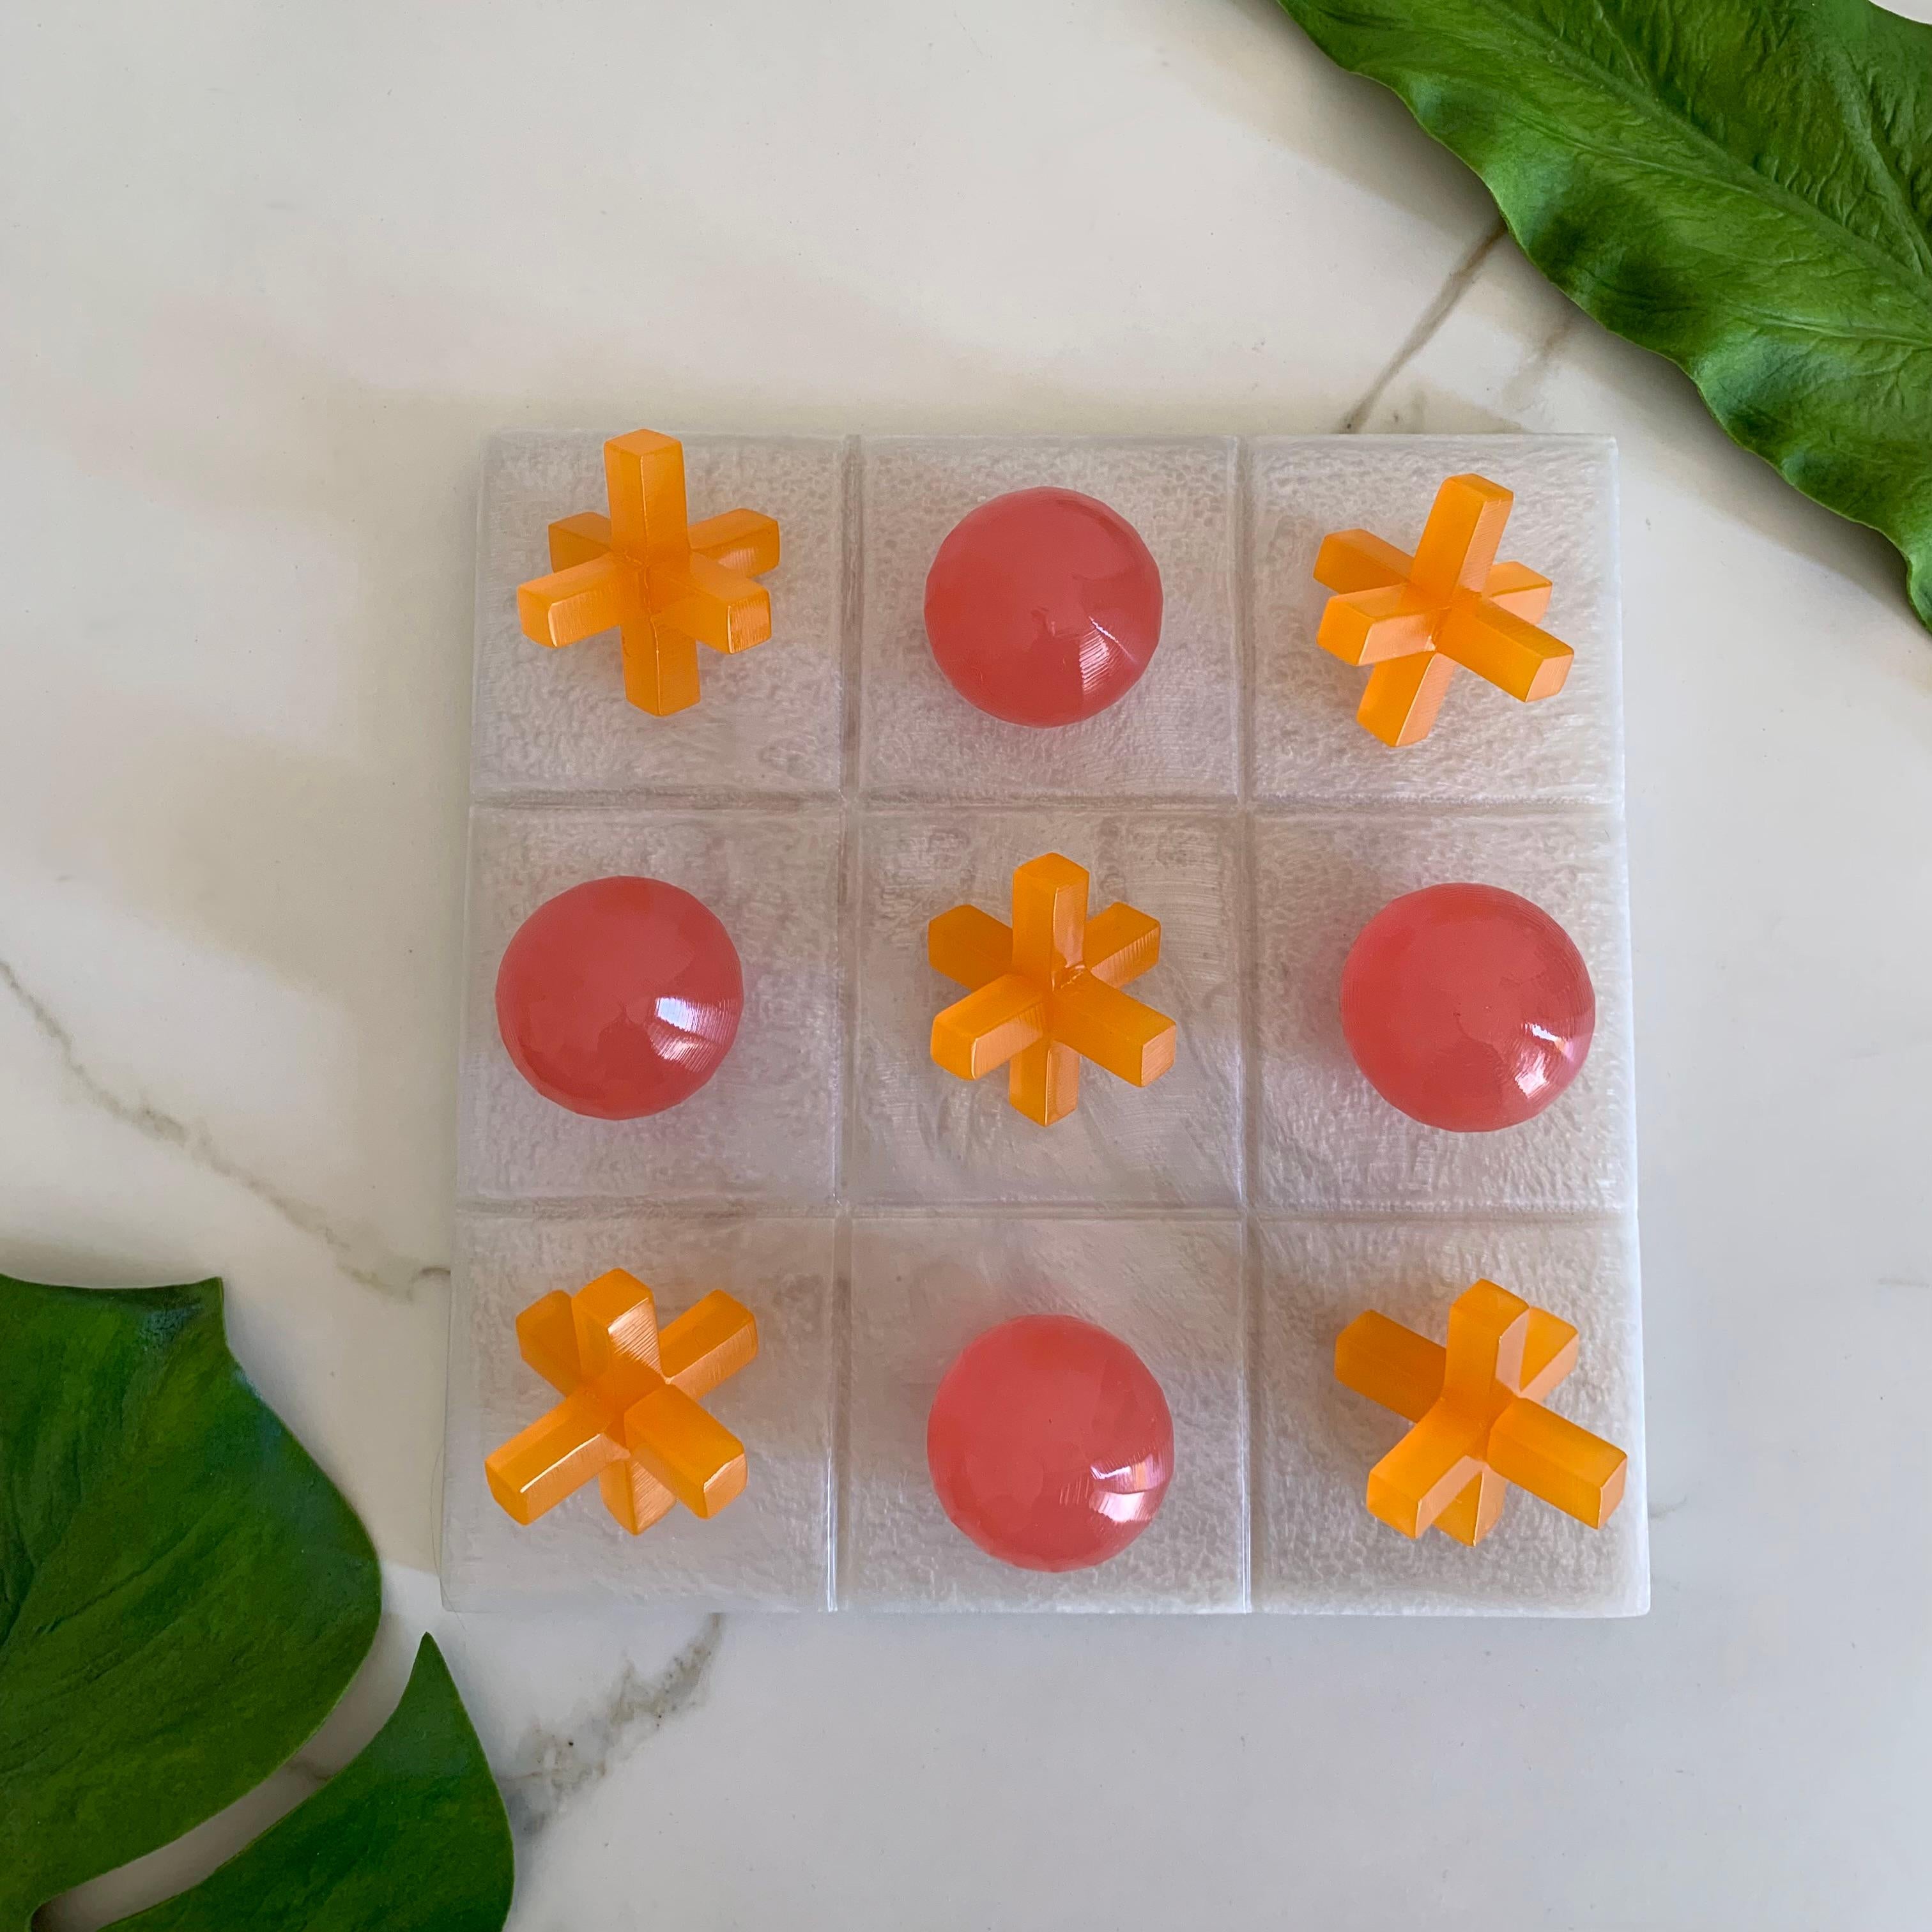 Unser Tic Tac Toe ist eine schöne, moderne und lustige Version des klassischen Spiels. Die dreidimensionalen Stücke sind aus rosa und orangefarbenem Harz handgefertigt, und das Brett ist aus weißem Perlenharz. Es wird das coolste Stück auf jedem